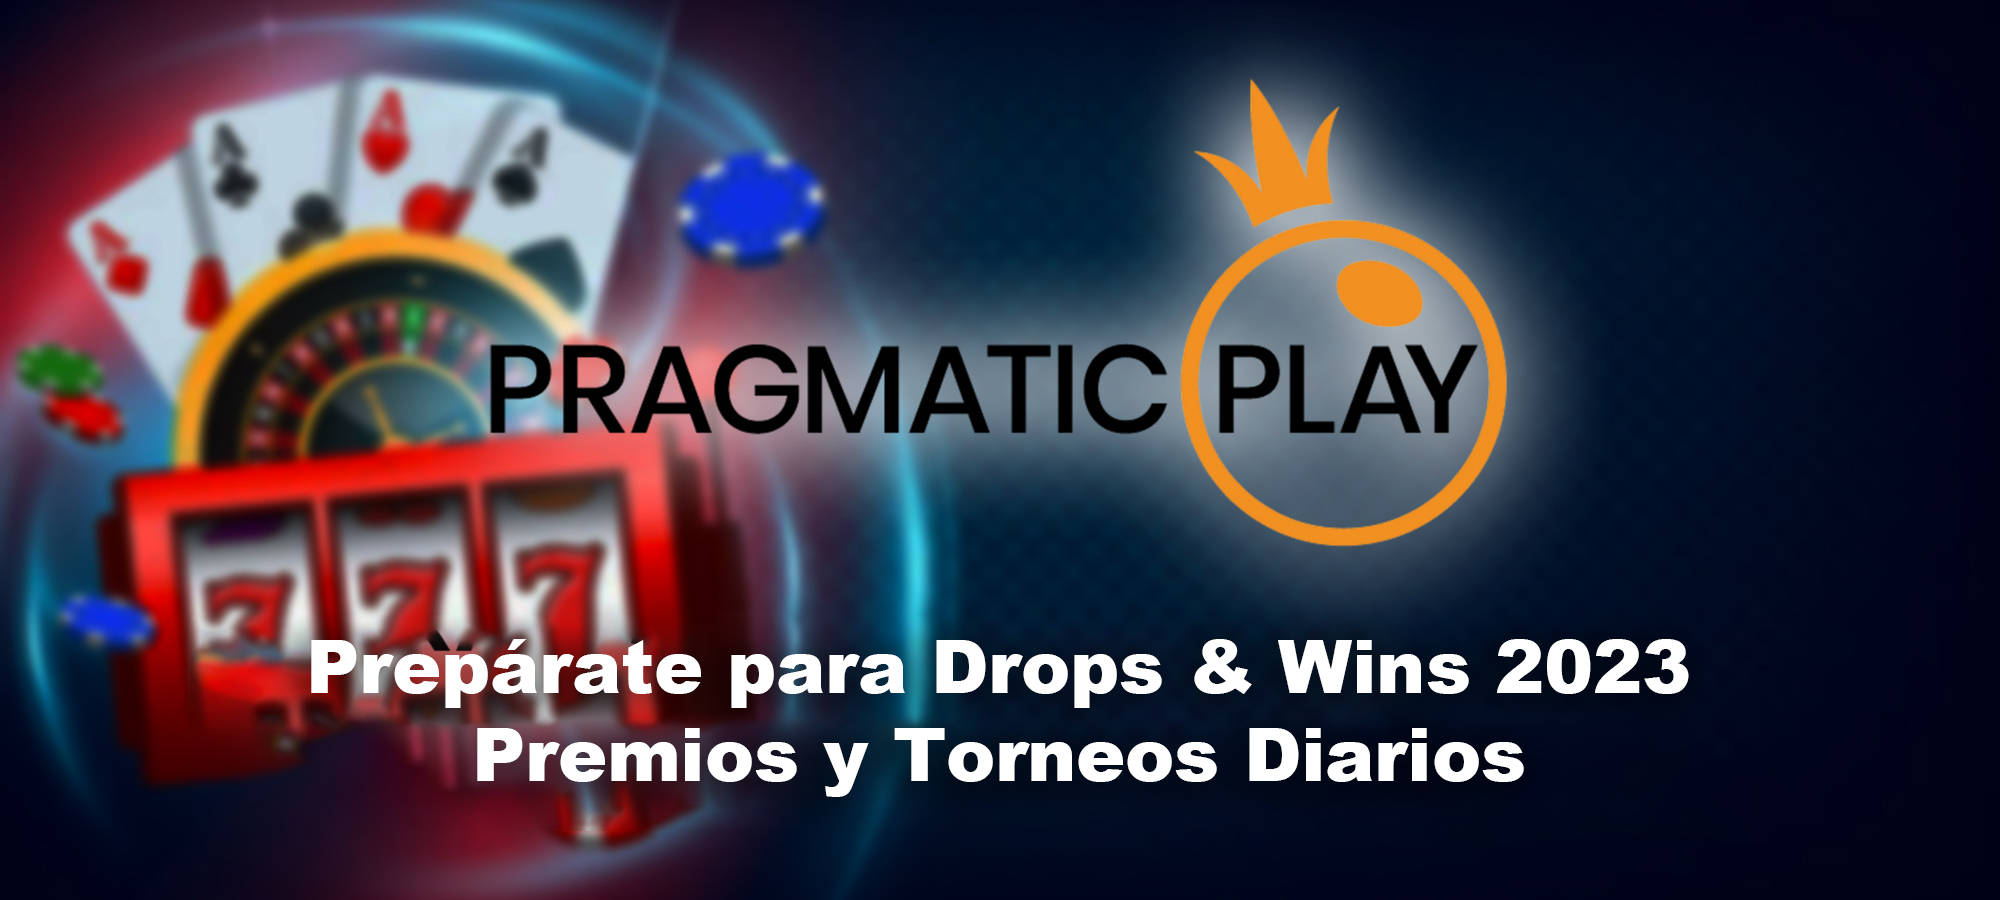 Prepárate para Drops & Wins 2023: Premios y Torneos Diarios